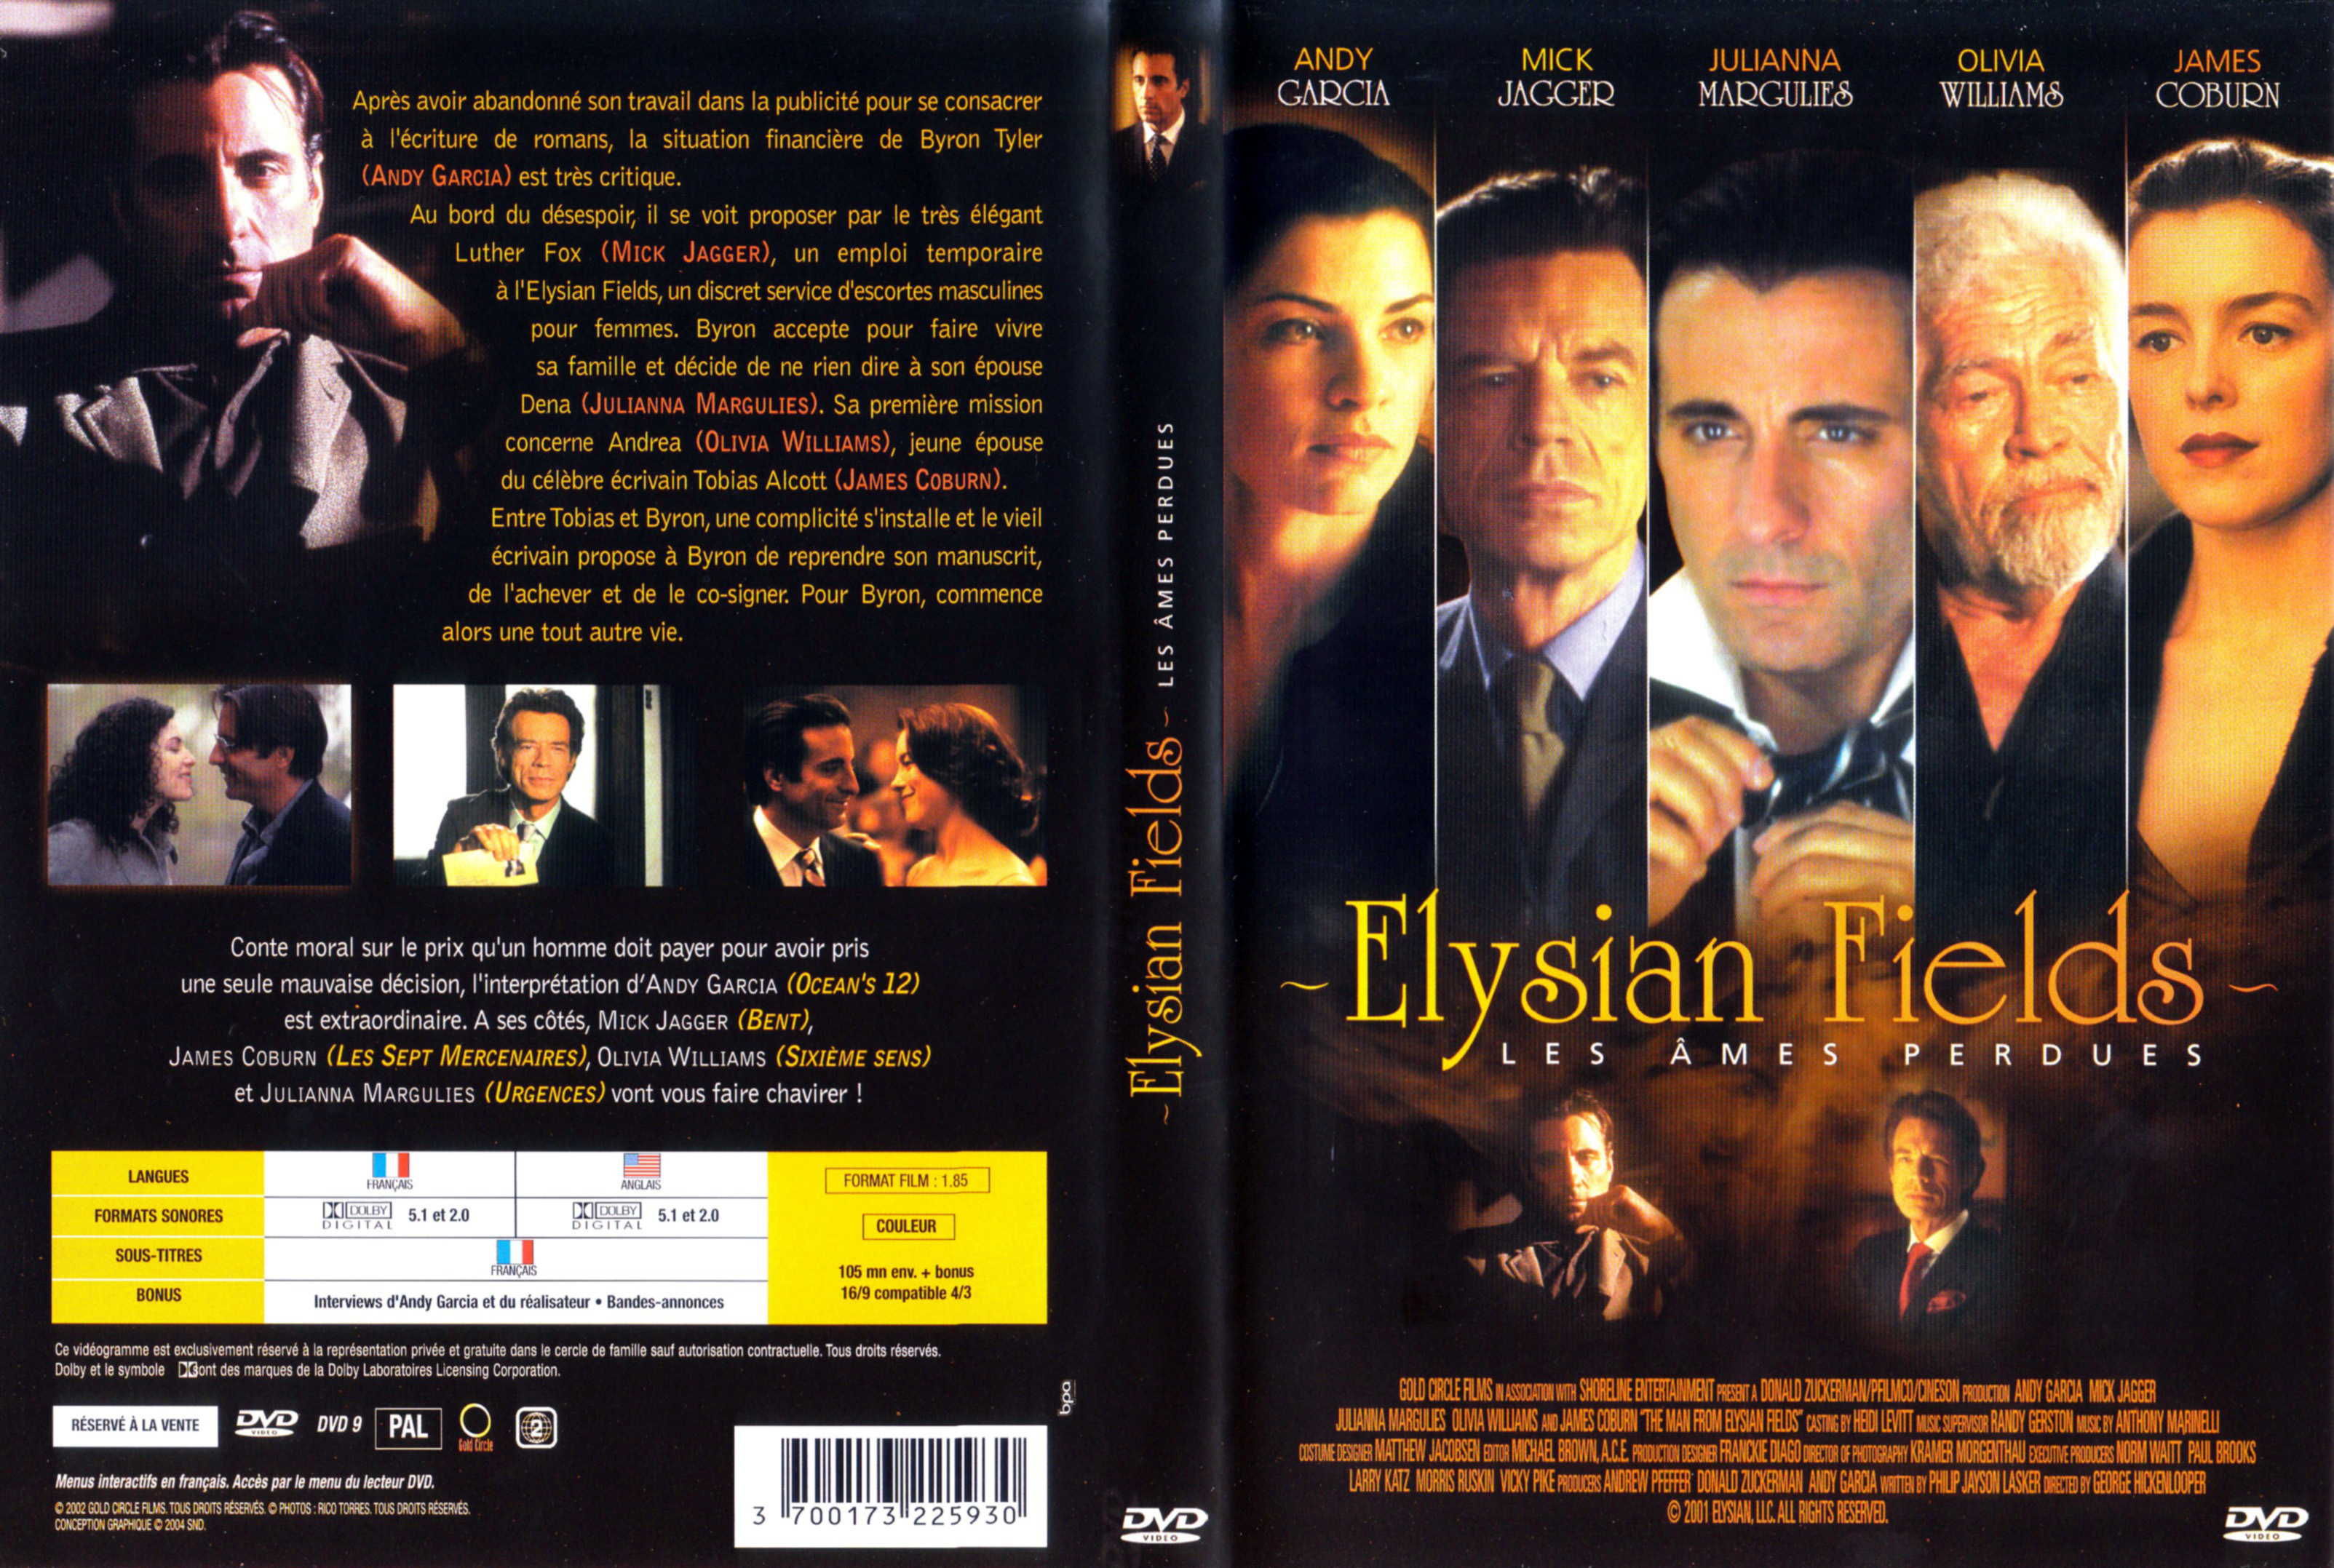 Jaquette DVD Elysian fields Les mes perdues